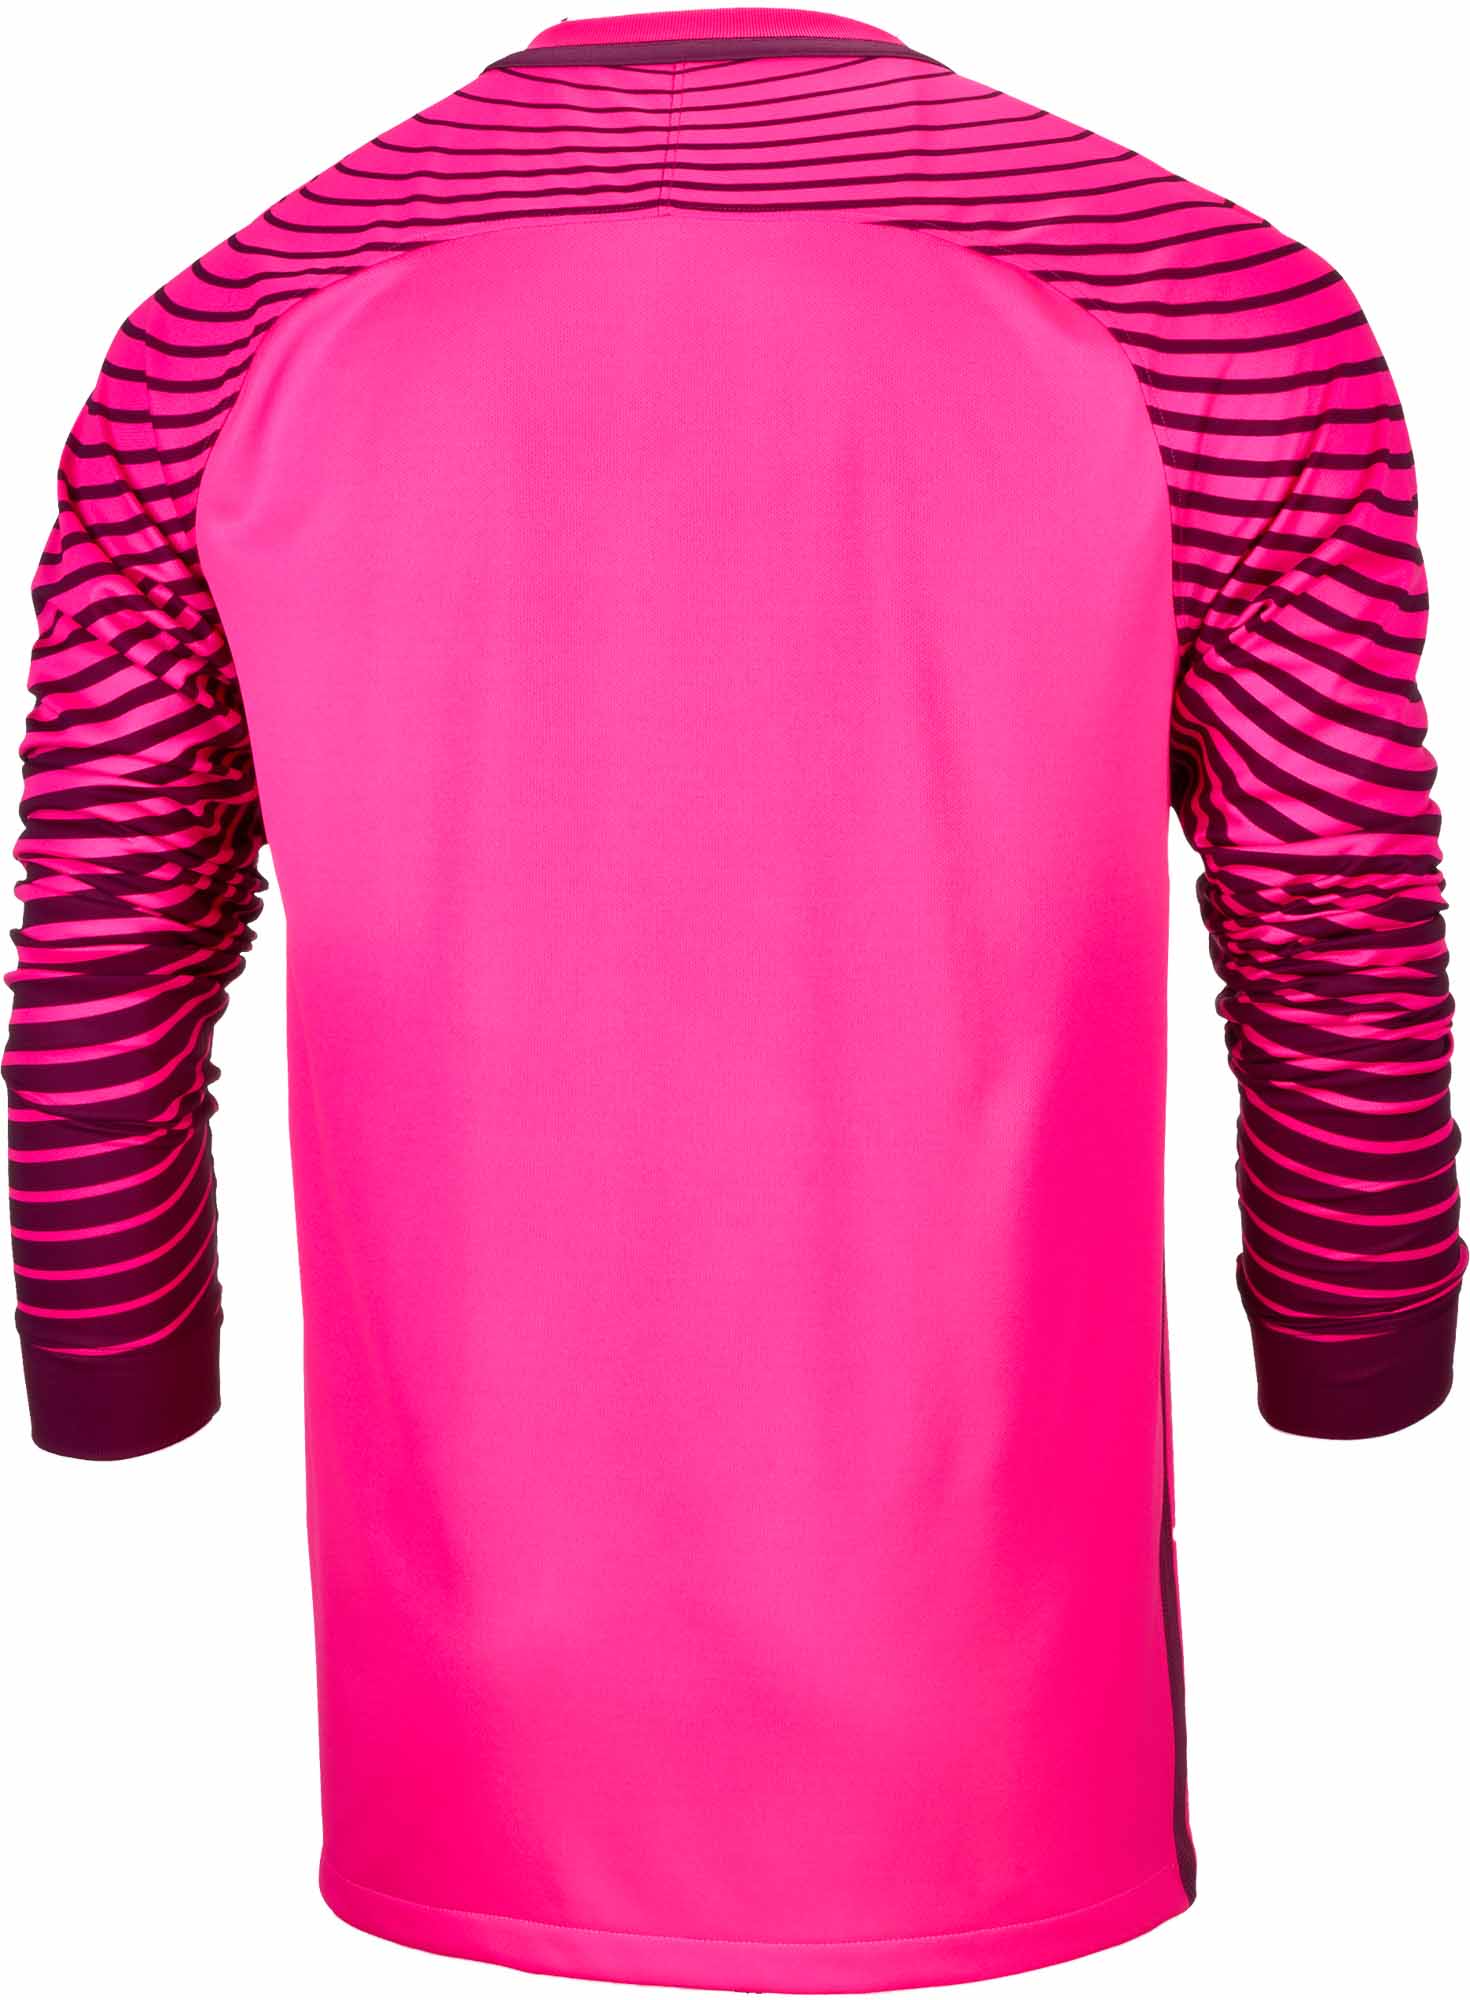 hot pink goalie jersey